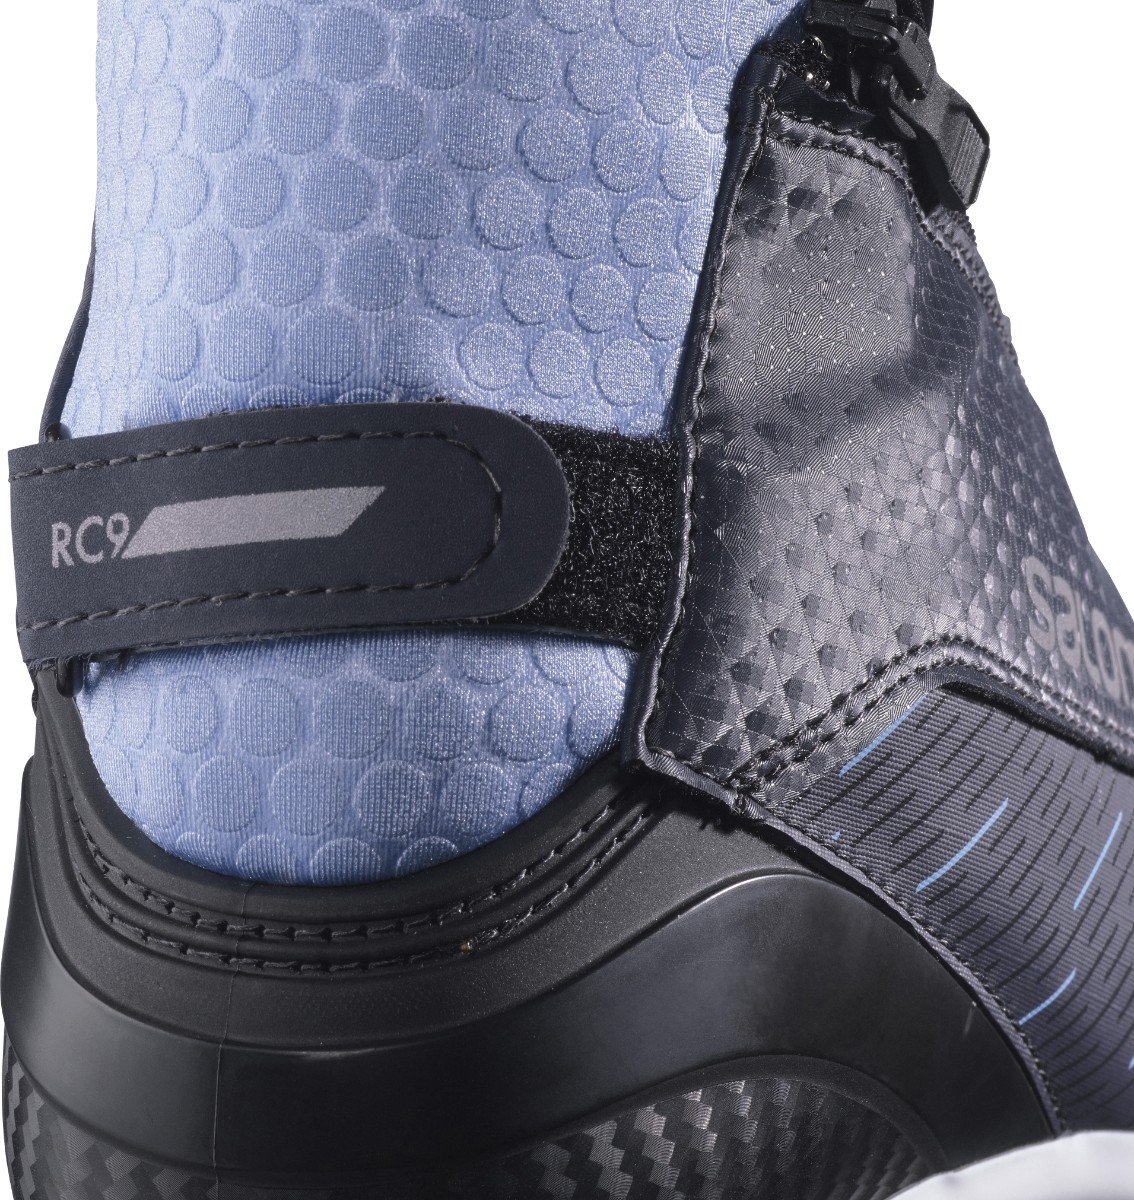 Salomon RC9 VITANE PROLINK W topánky na bežecké lyžovanie - black/blue